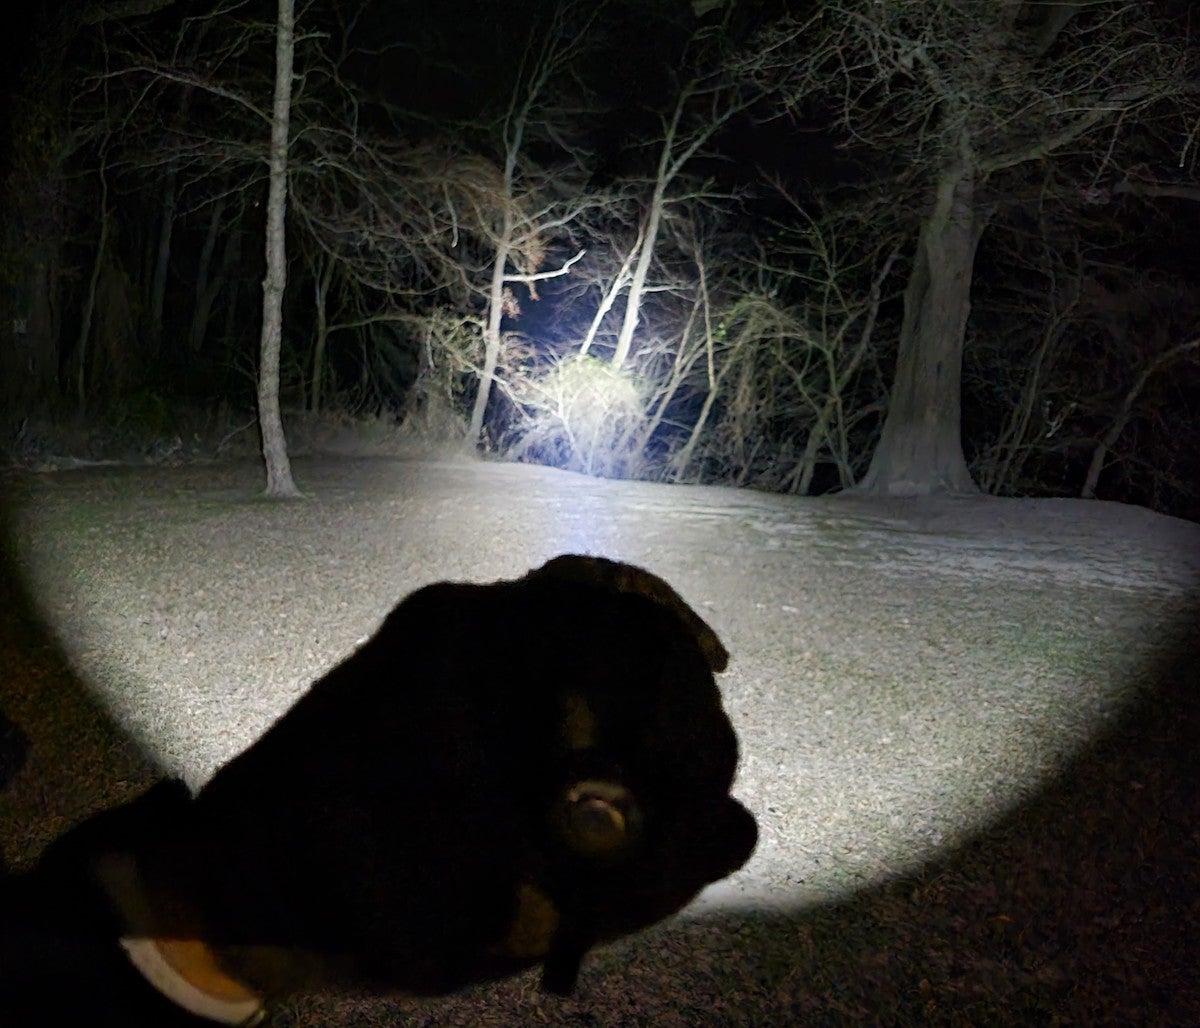 Light beam from Olight Warrior X 3 Flashlight at night